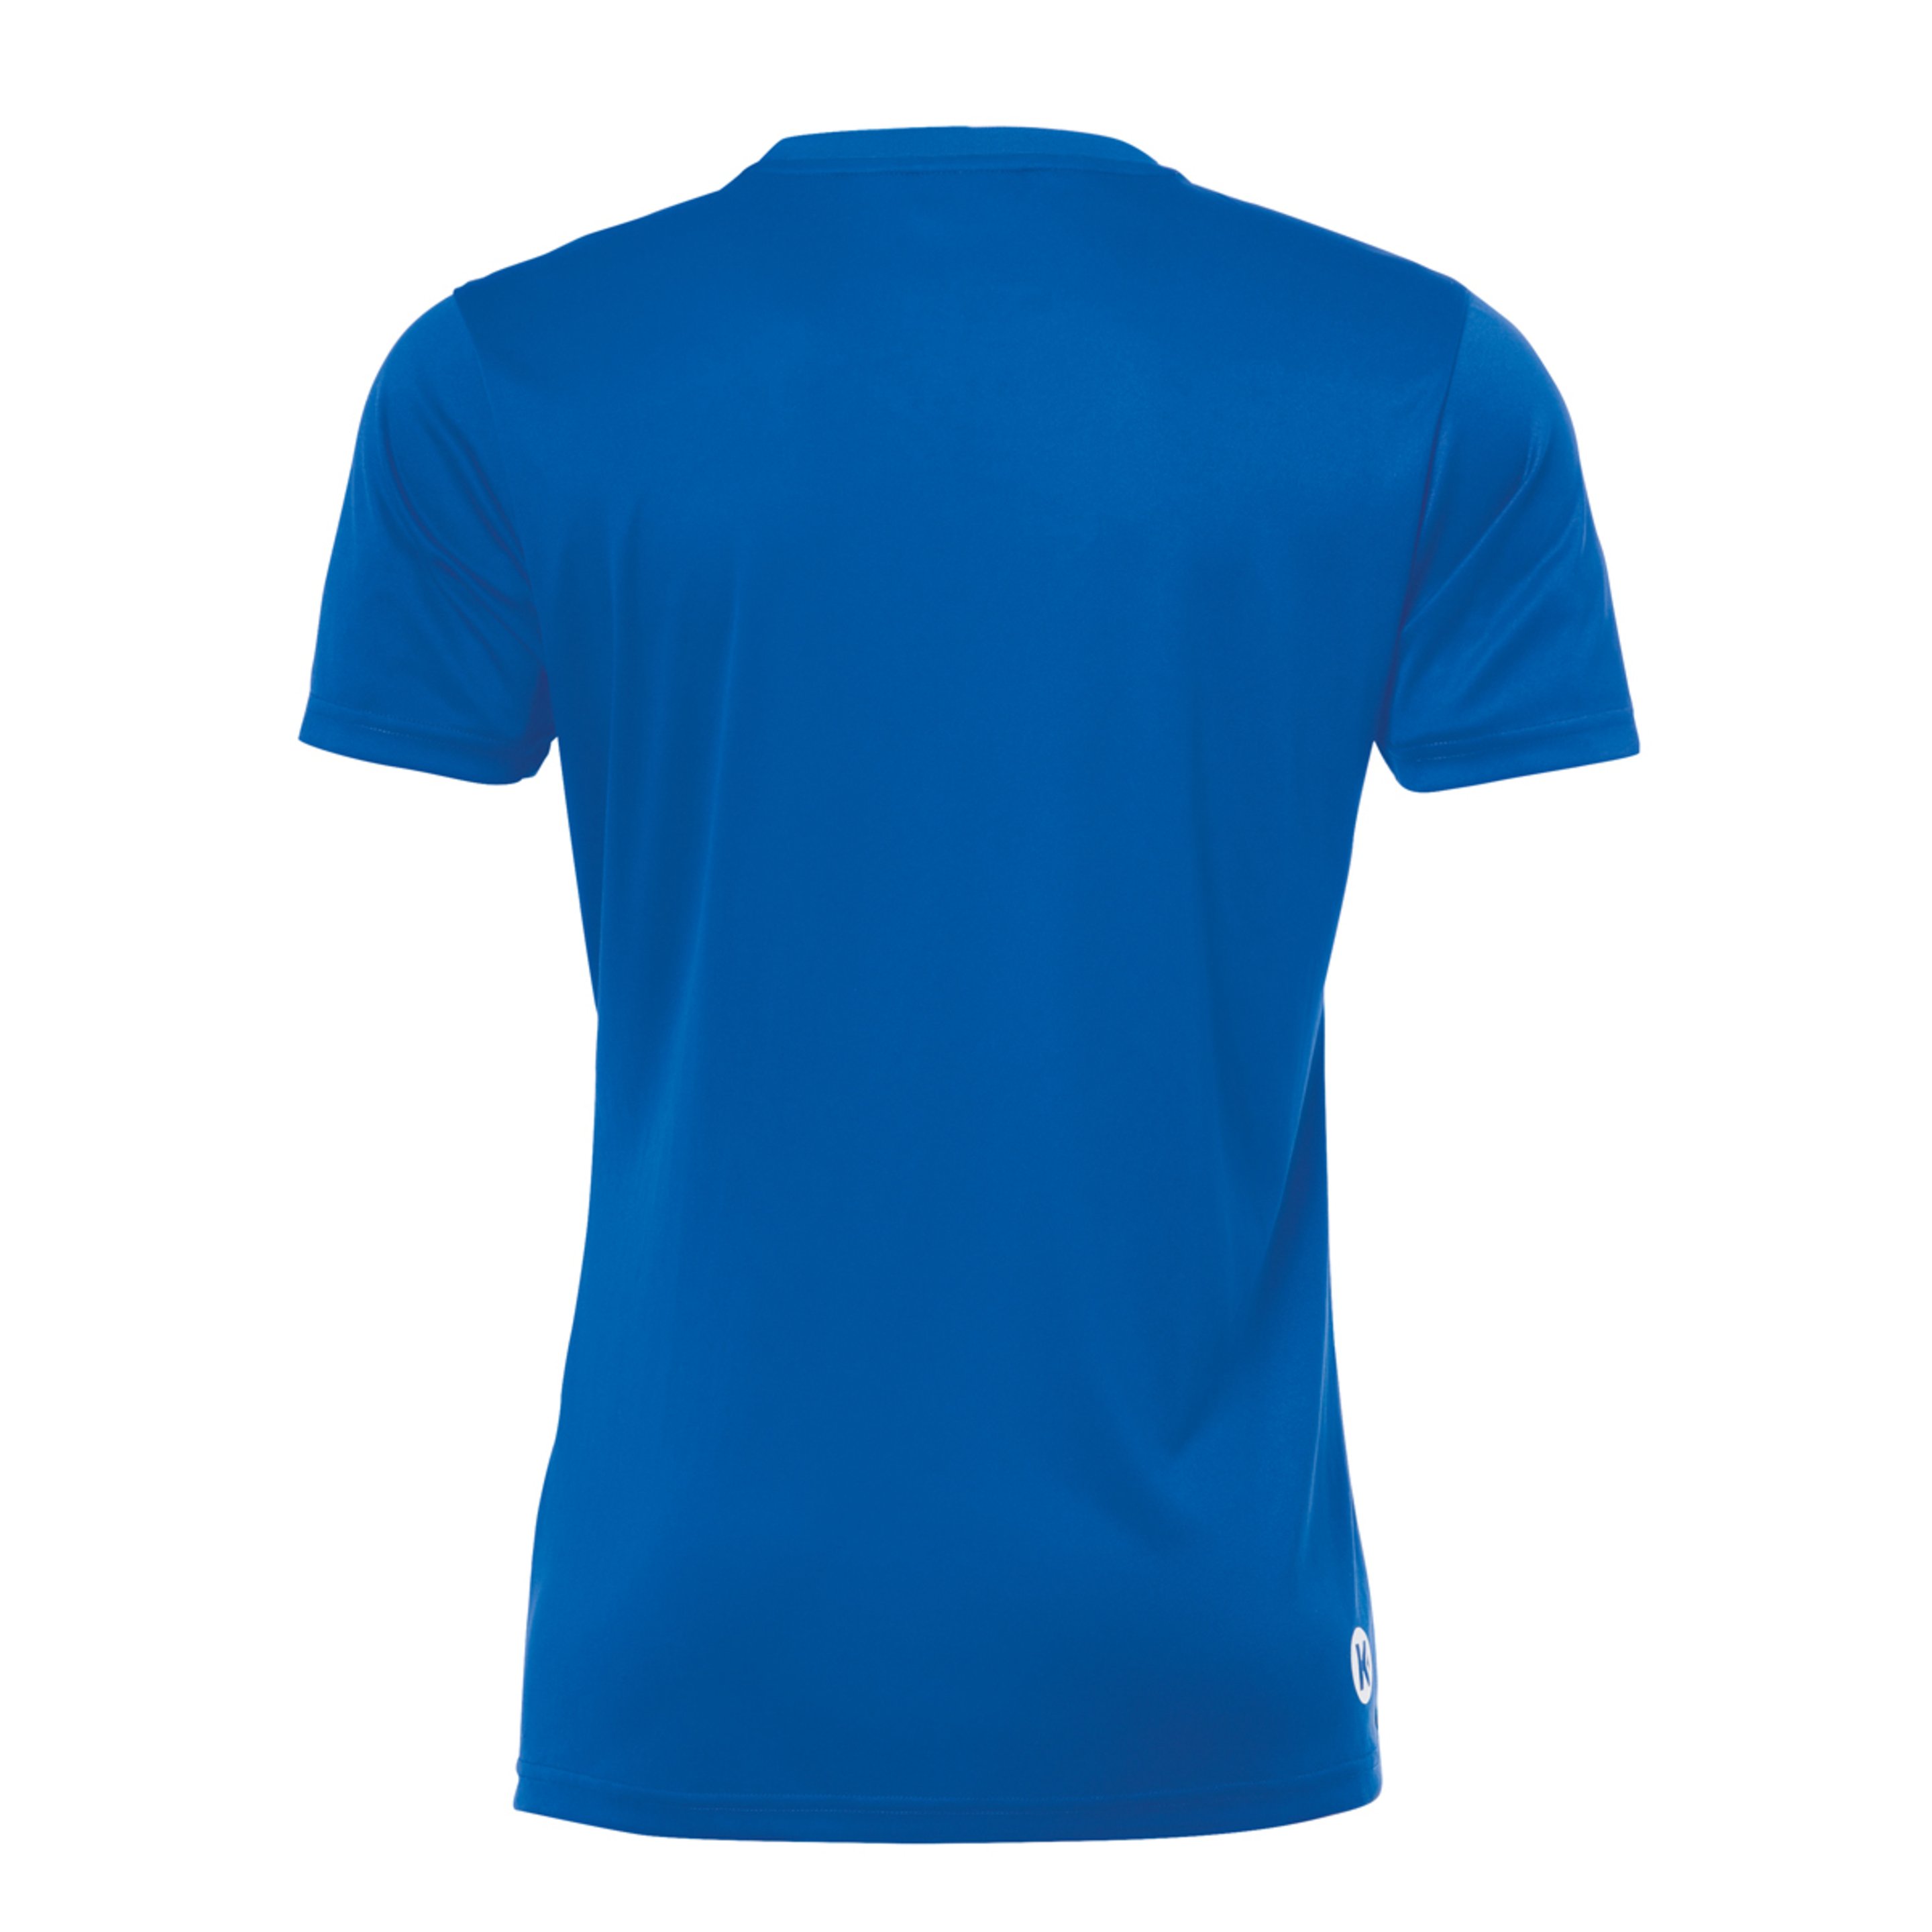 Poly Shirt De Mujer Azul Royal Kempa